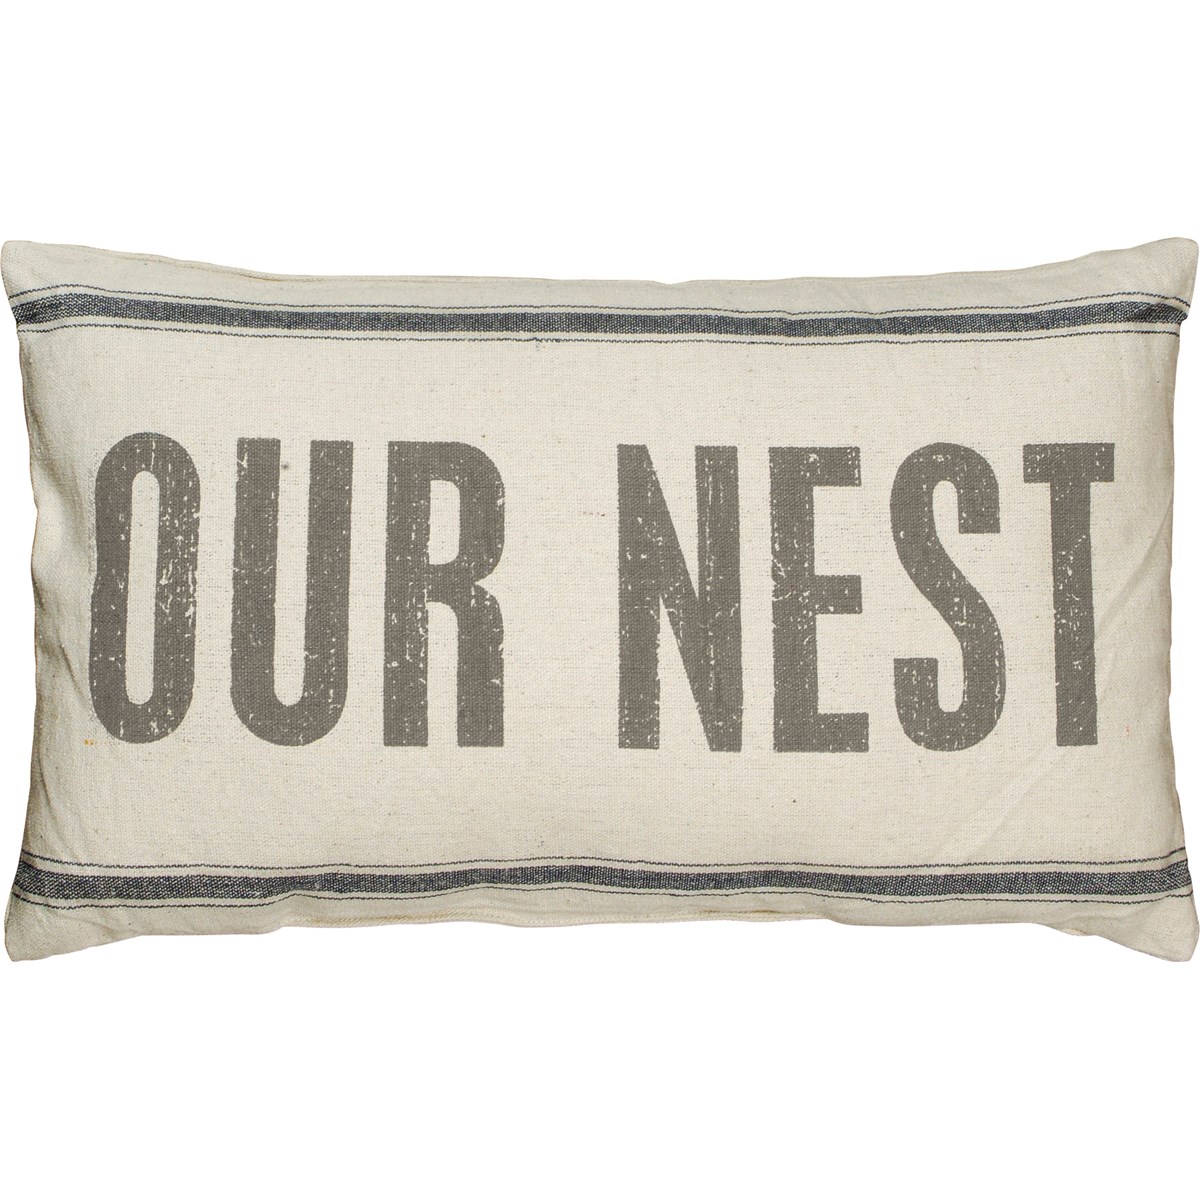 Our Nest Pillow - Cotton, Zipper